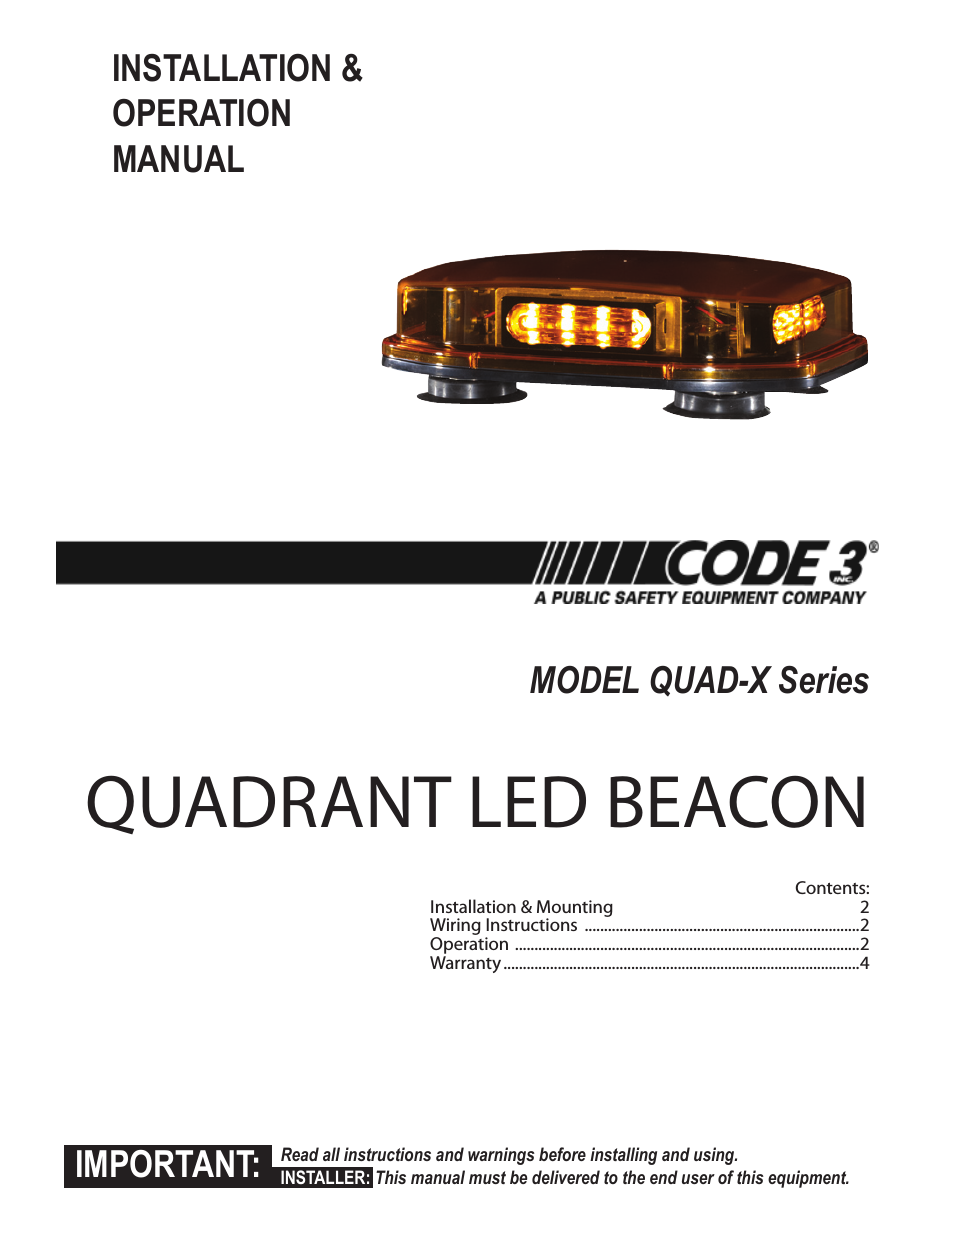 Quadrant LED Mini Bar